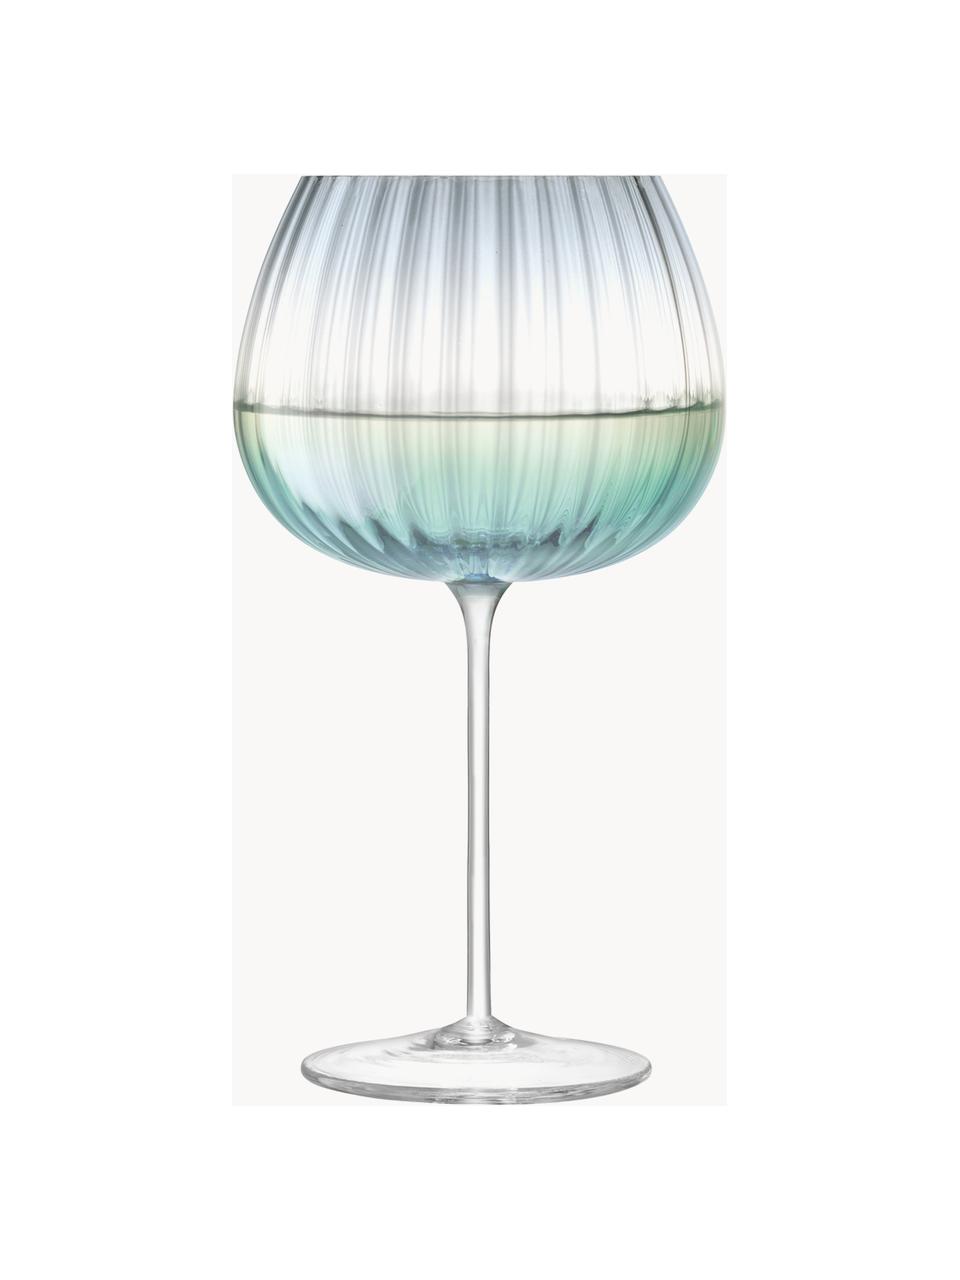 Handgemachte Weingläser Dusk mit Farbverlauf, 2 Stück, Glas, Türkis, Grau, Transparent, Ø 10 x H 20 cm, 650 ml